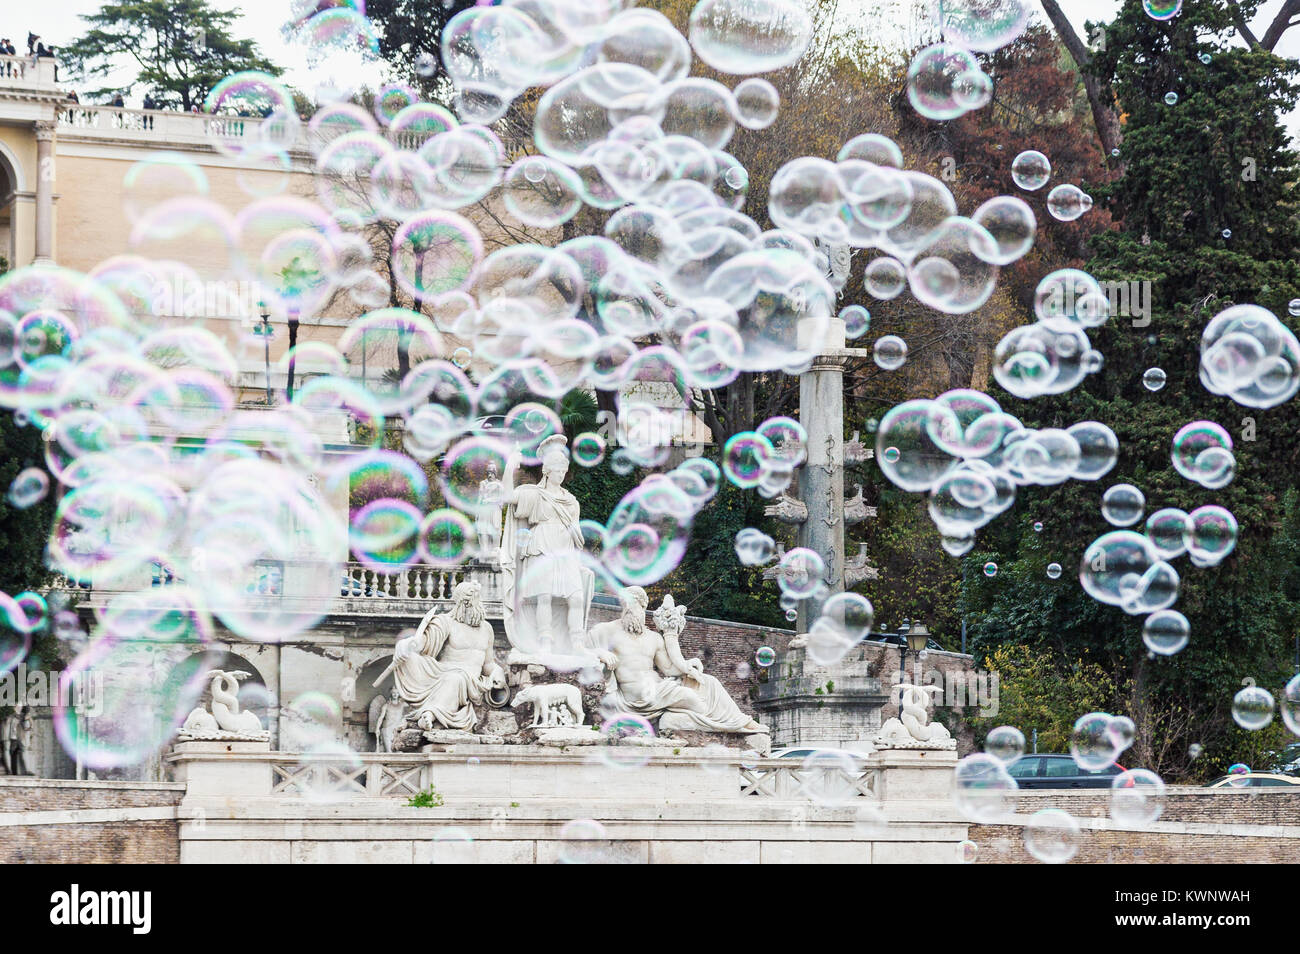 Groupe de bulles de savon de vol couvrant fontaine nommé Rome entre le Tibre et l'Aniene à Piazza del Popolo à Rome, Italie Banque D'Images